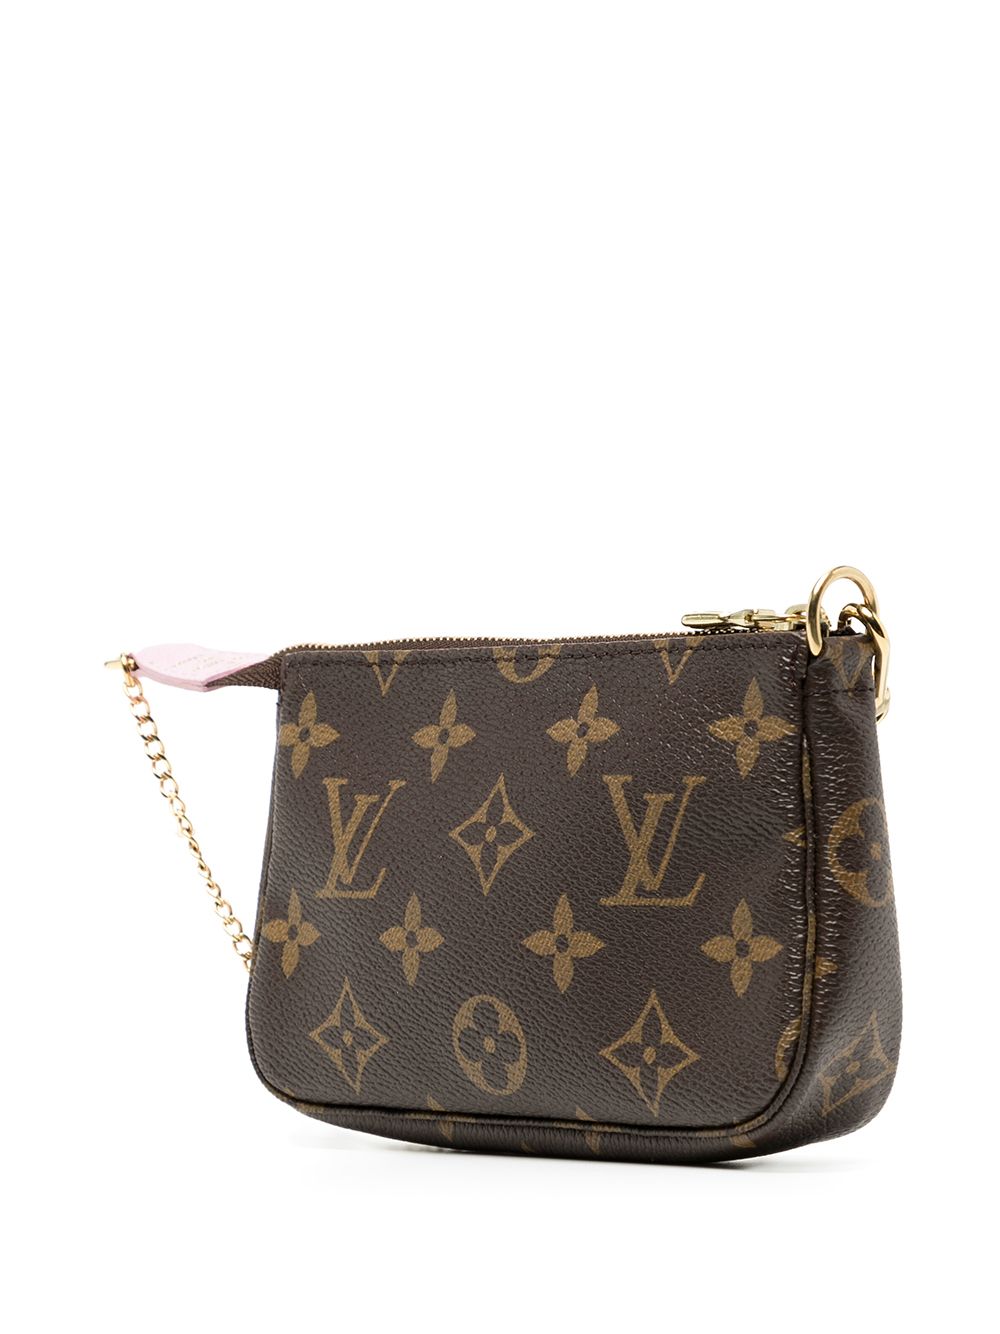 Louis Vuitton 2010 pre-owned Damier Azur Mini Pochette Accessoires Handbag  - Farfetch